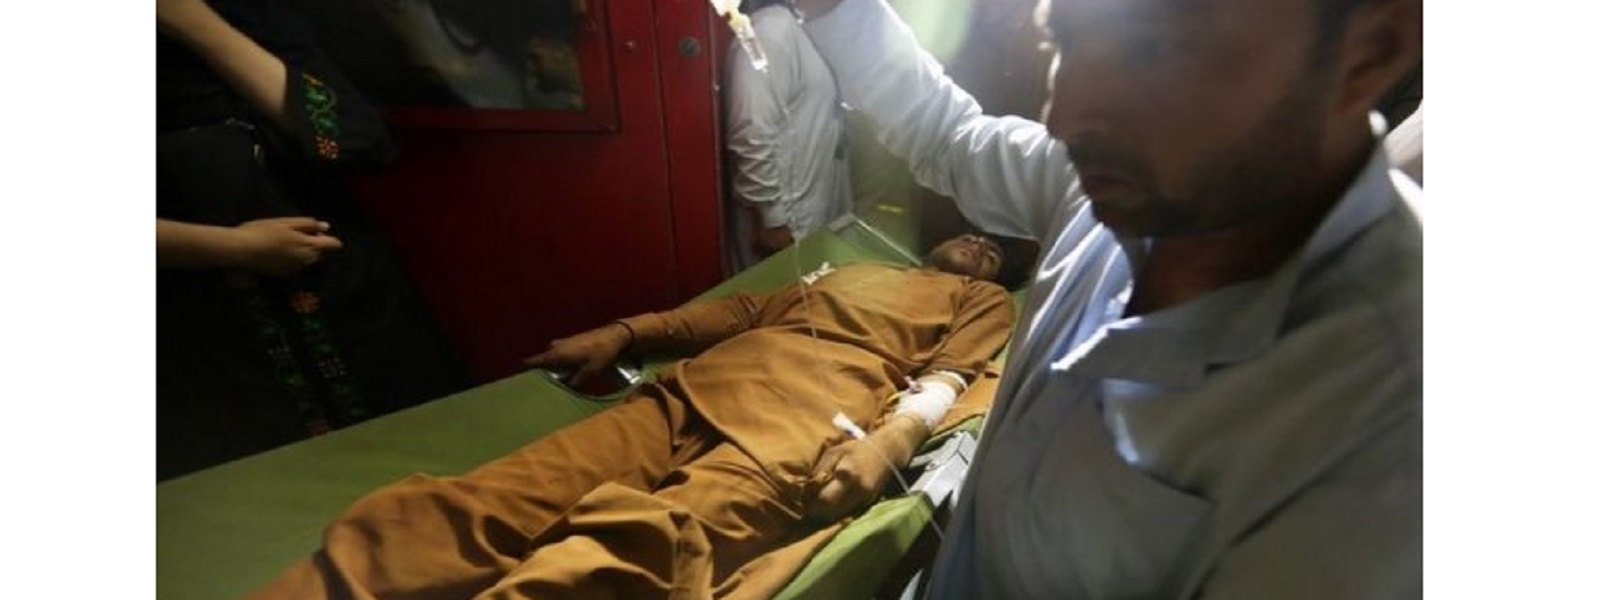 ஆப்கானிஸ்தானில் கார் குண்டுத்தாக்குதல்:17 பேர் பலி